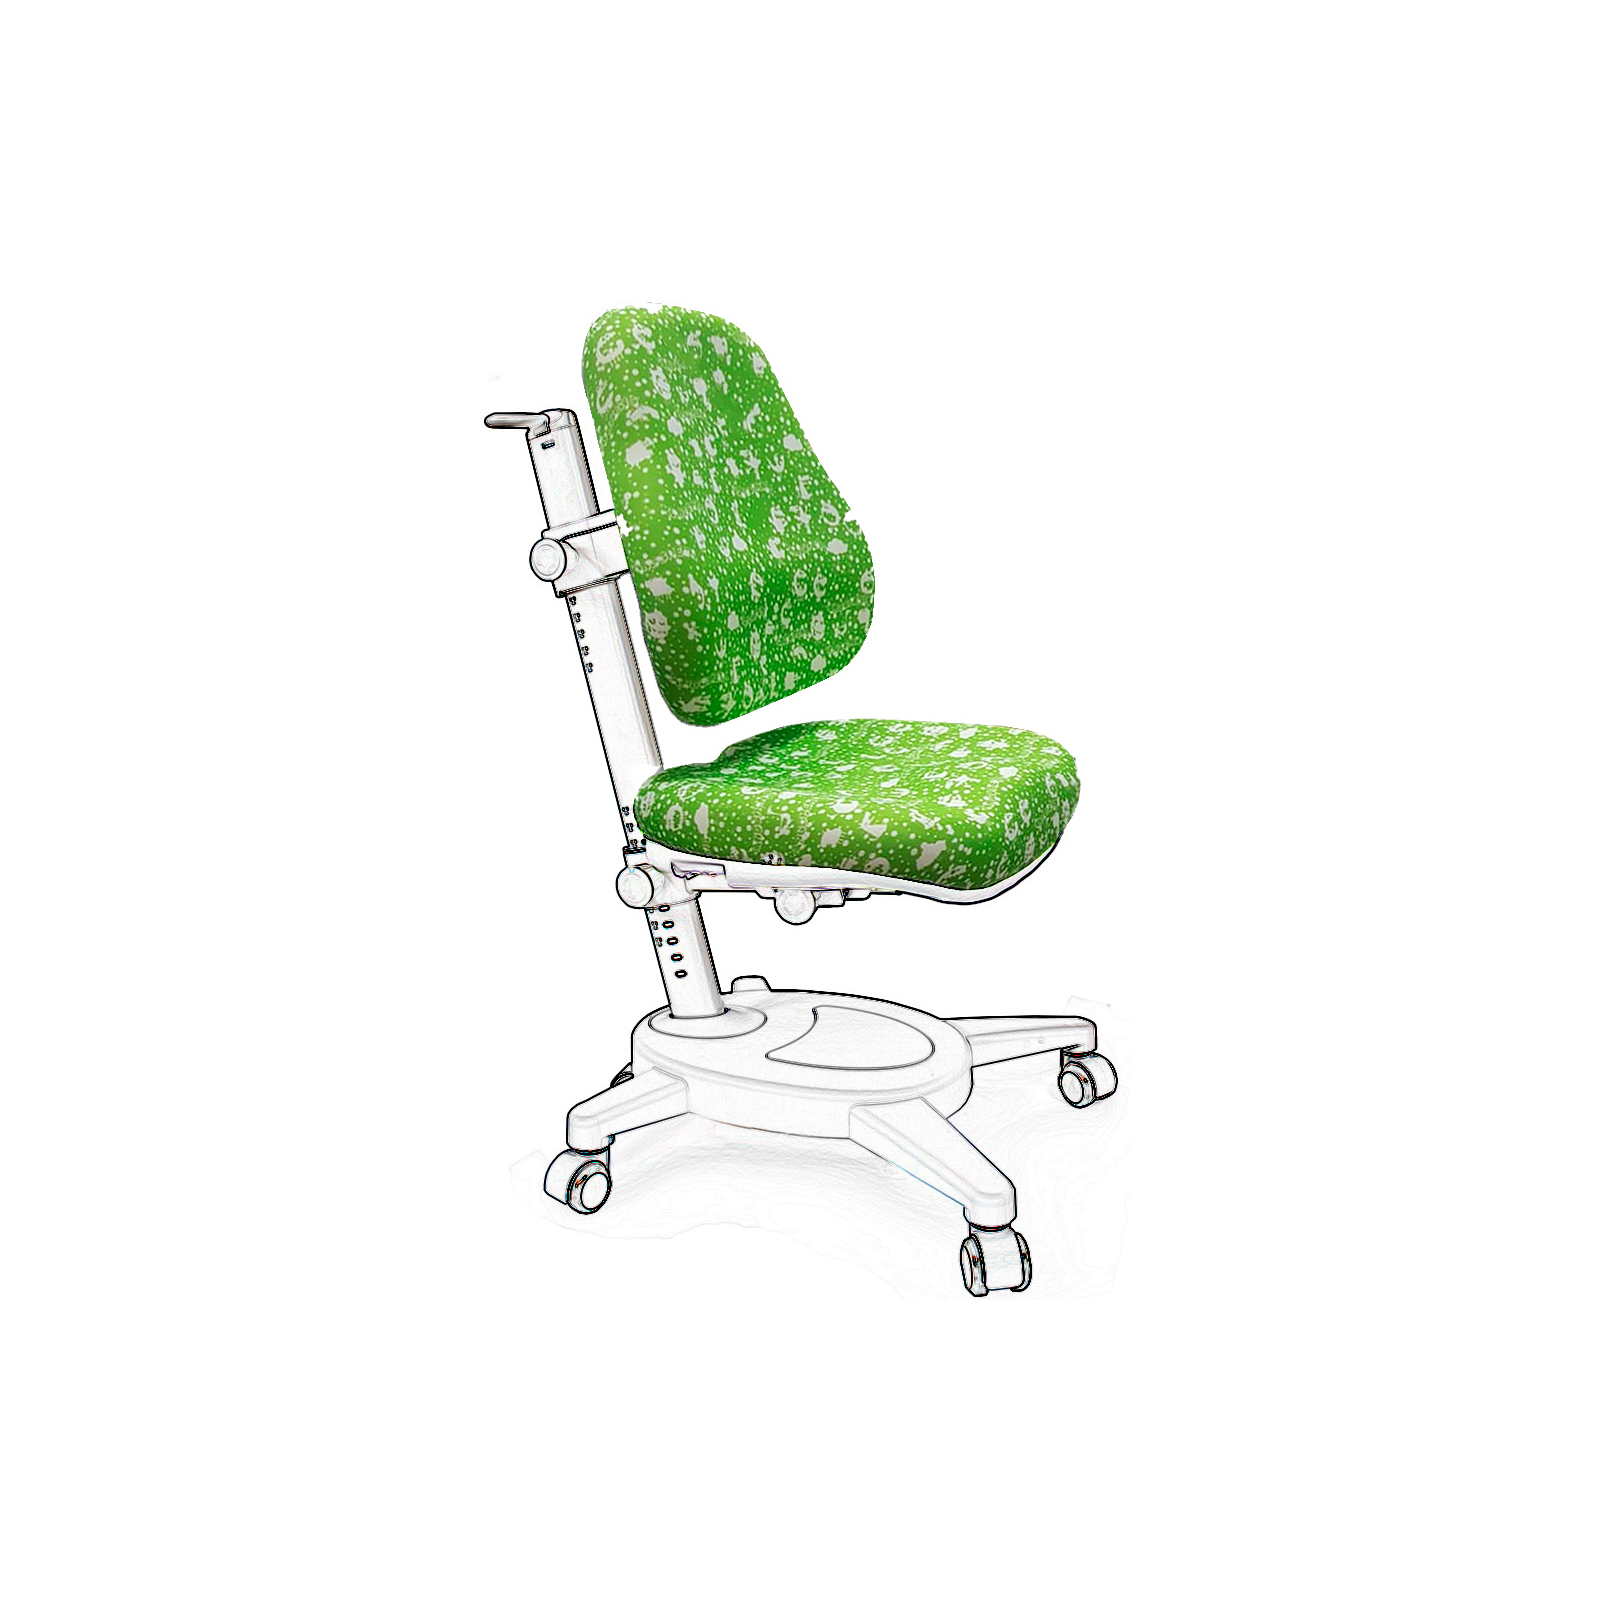 Чохол для крісла Mealux Cambridge, Onyx, Onyx Mobi зелений з монстриками (Чехол AZK (Y-410/418/110))